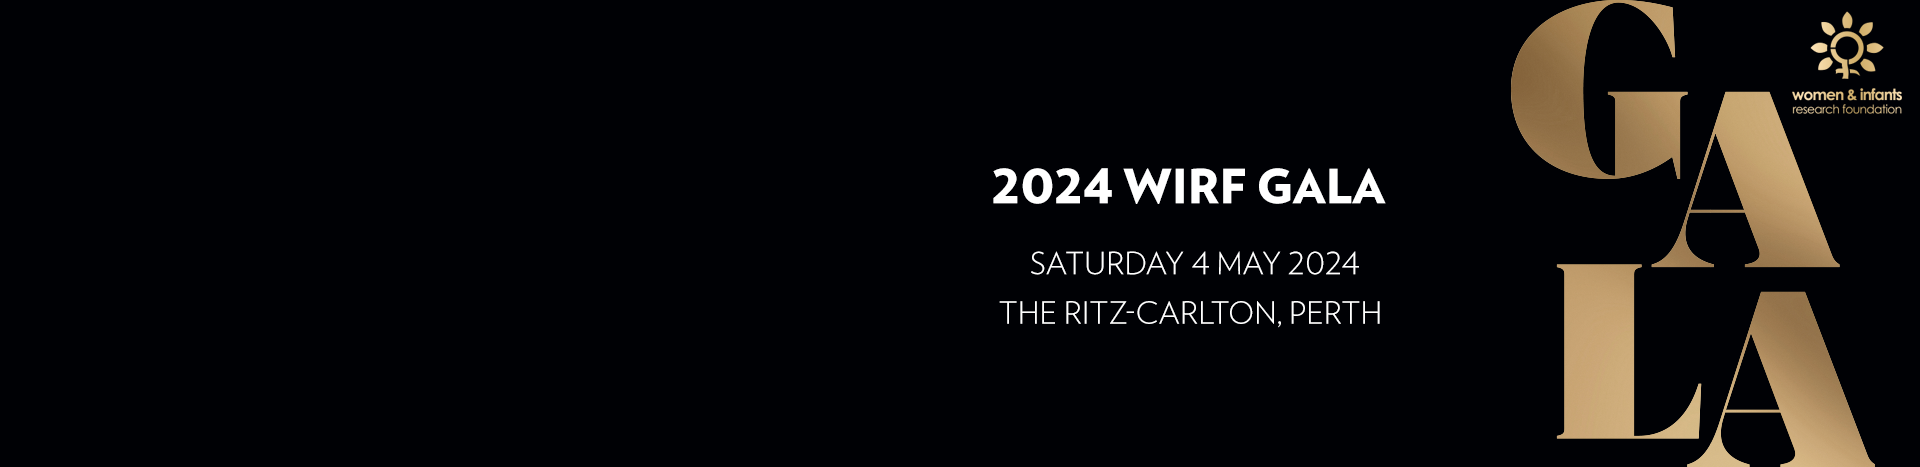 2024 WIRF Gala